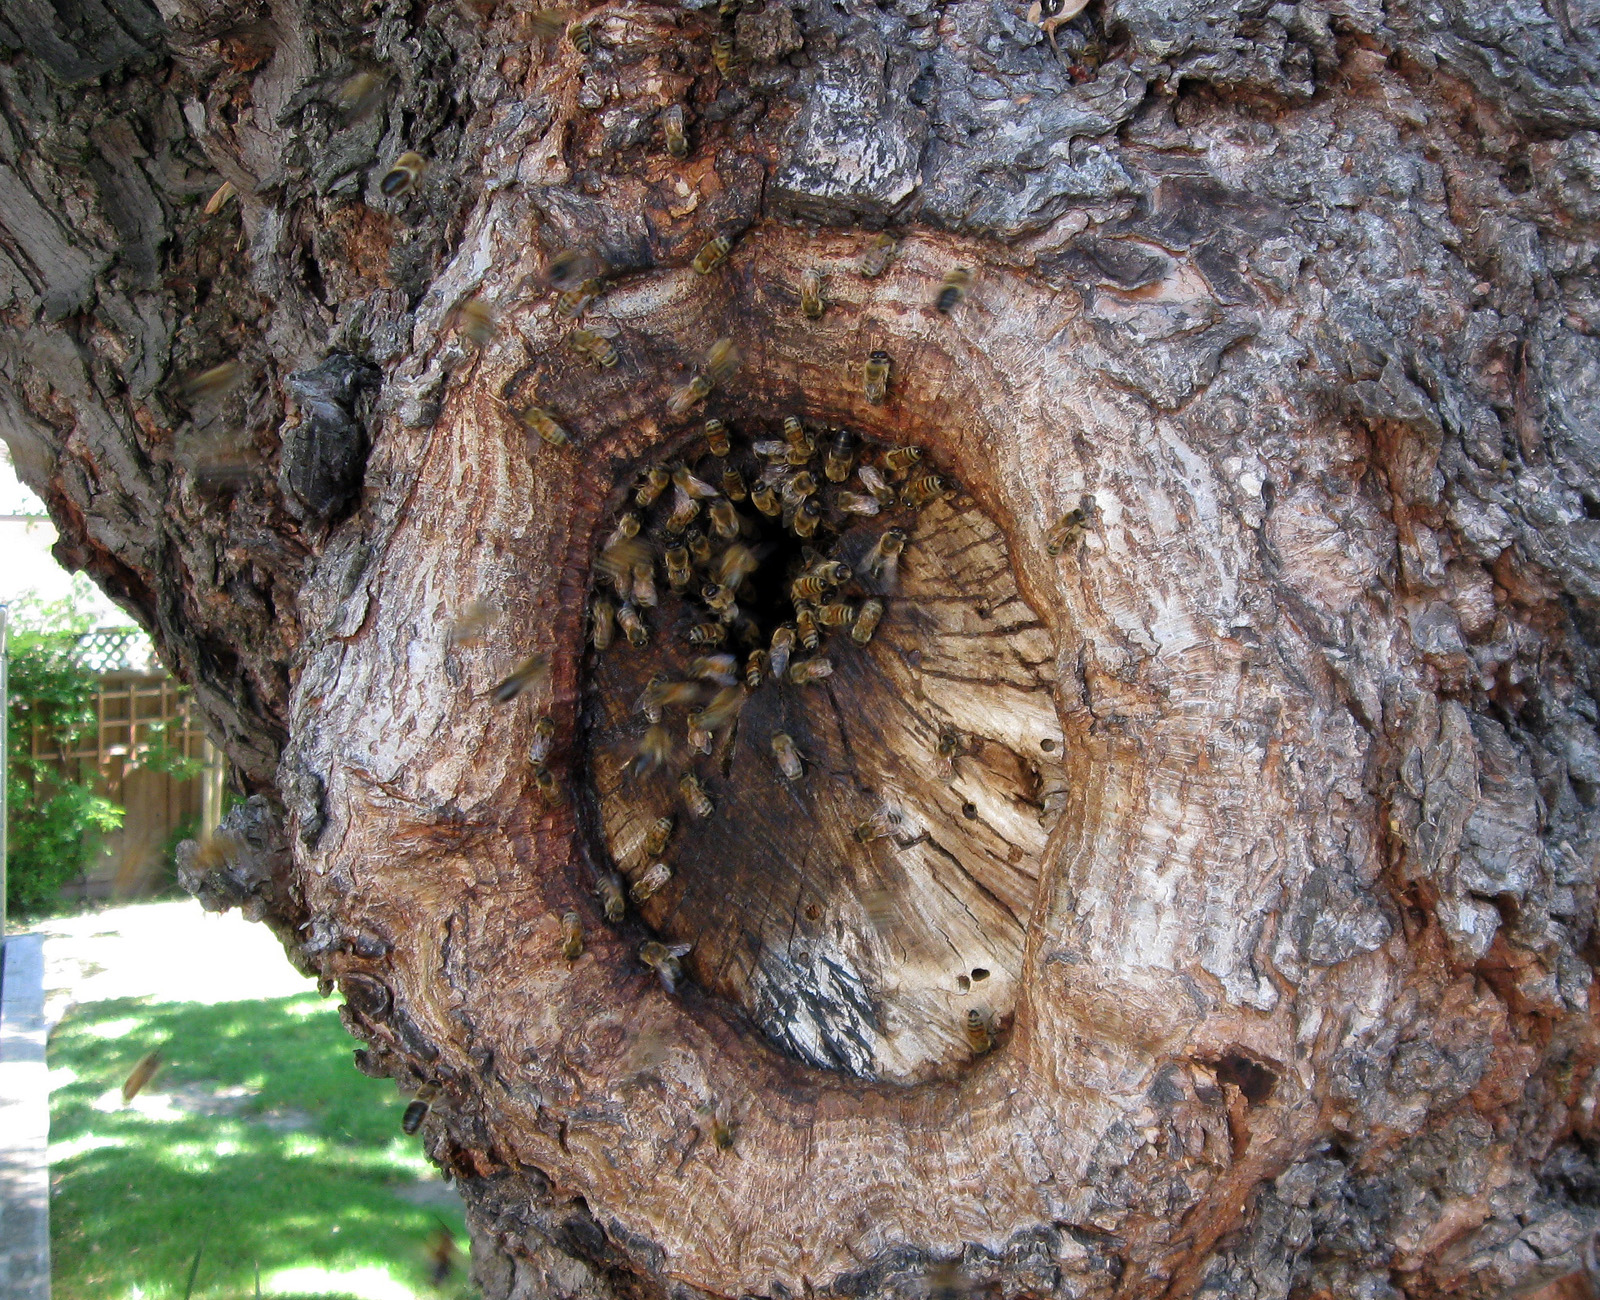 Pszczoły przy wejściu do dziupli w drzewie